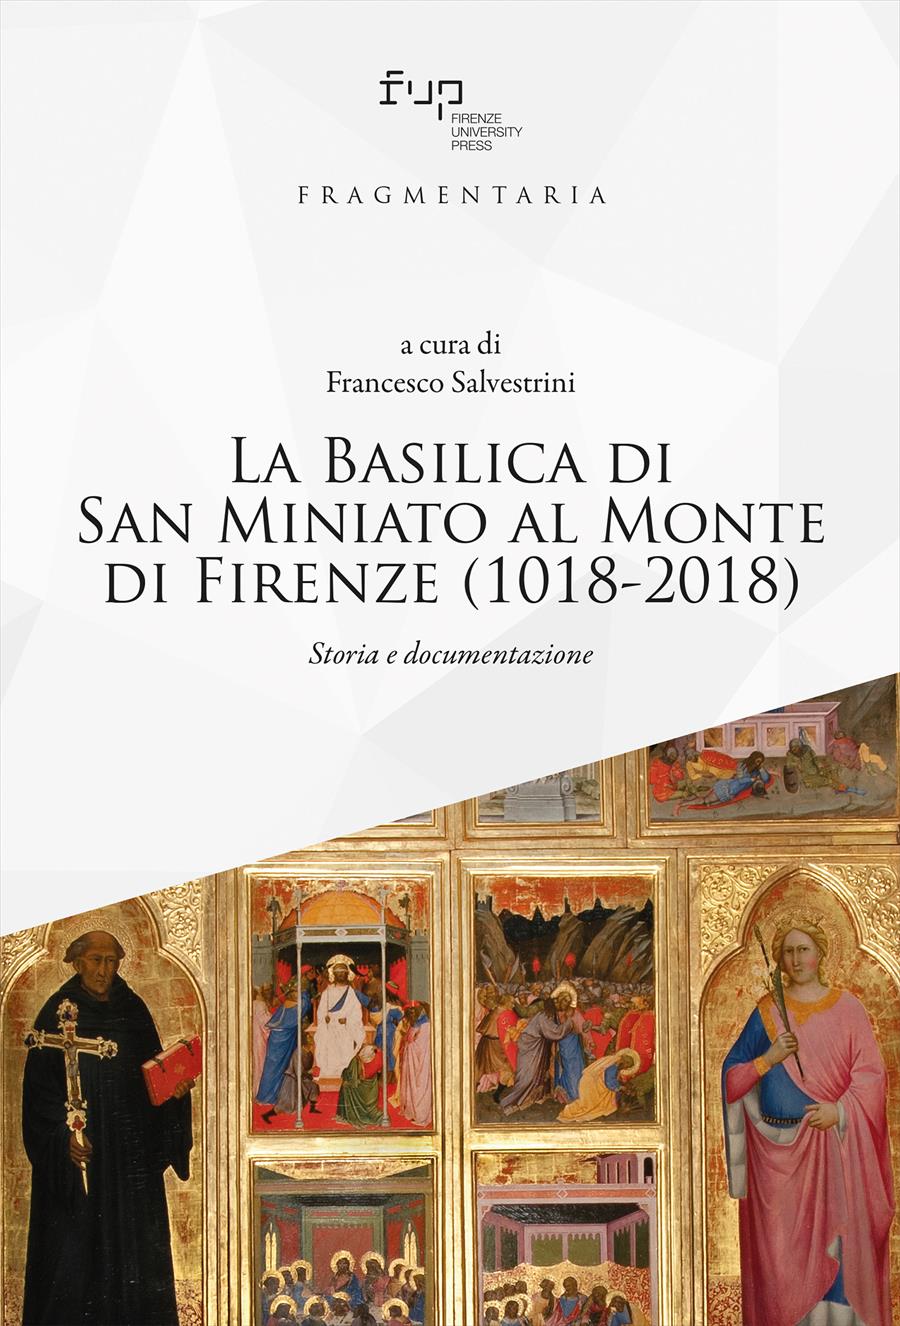 La Basilica di San Miniato al Monte di Firenze (1018-2018) 